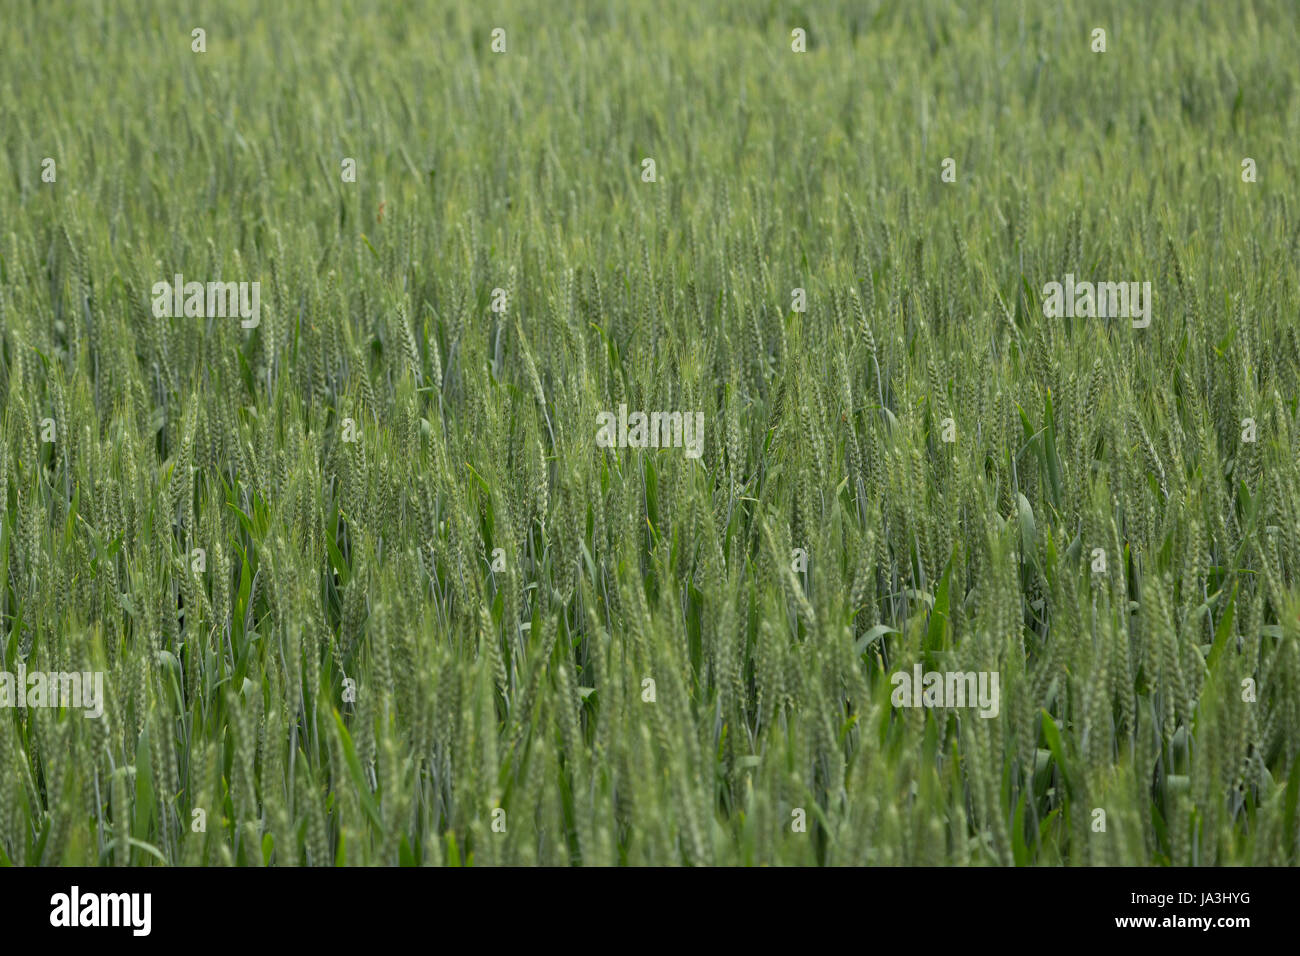 Une photographie d'un champ de céréales en Europe. Banque D'Images